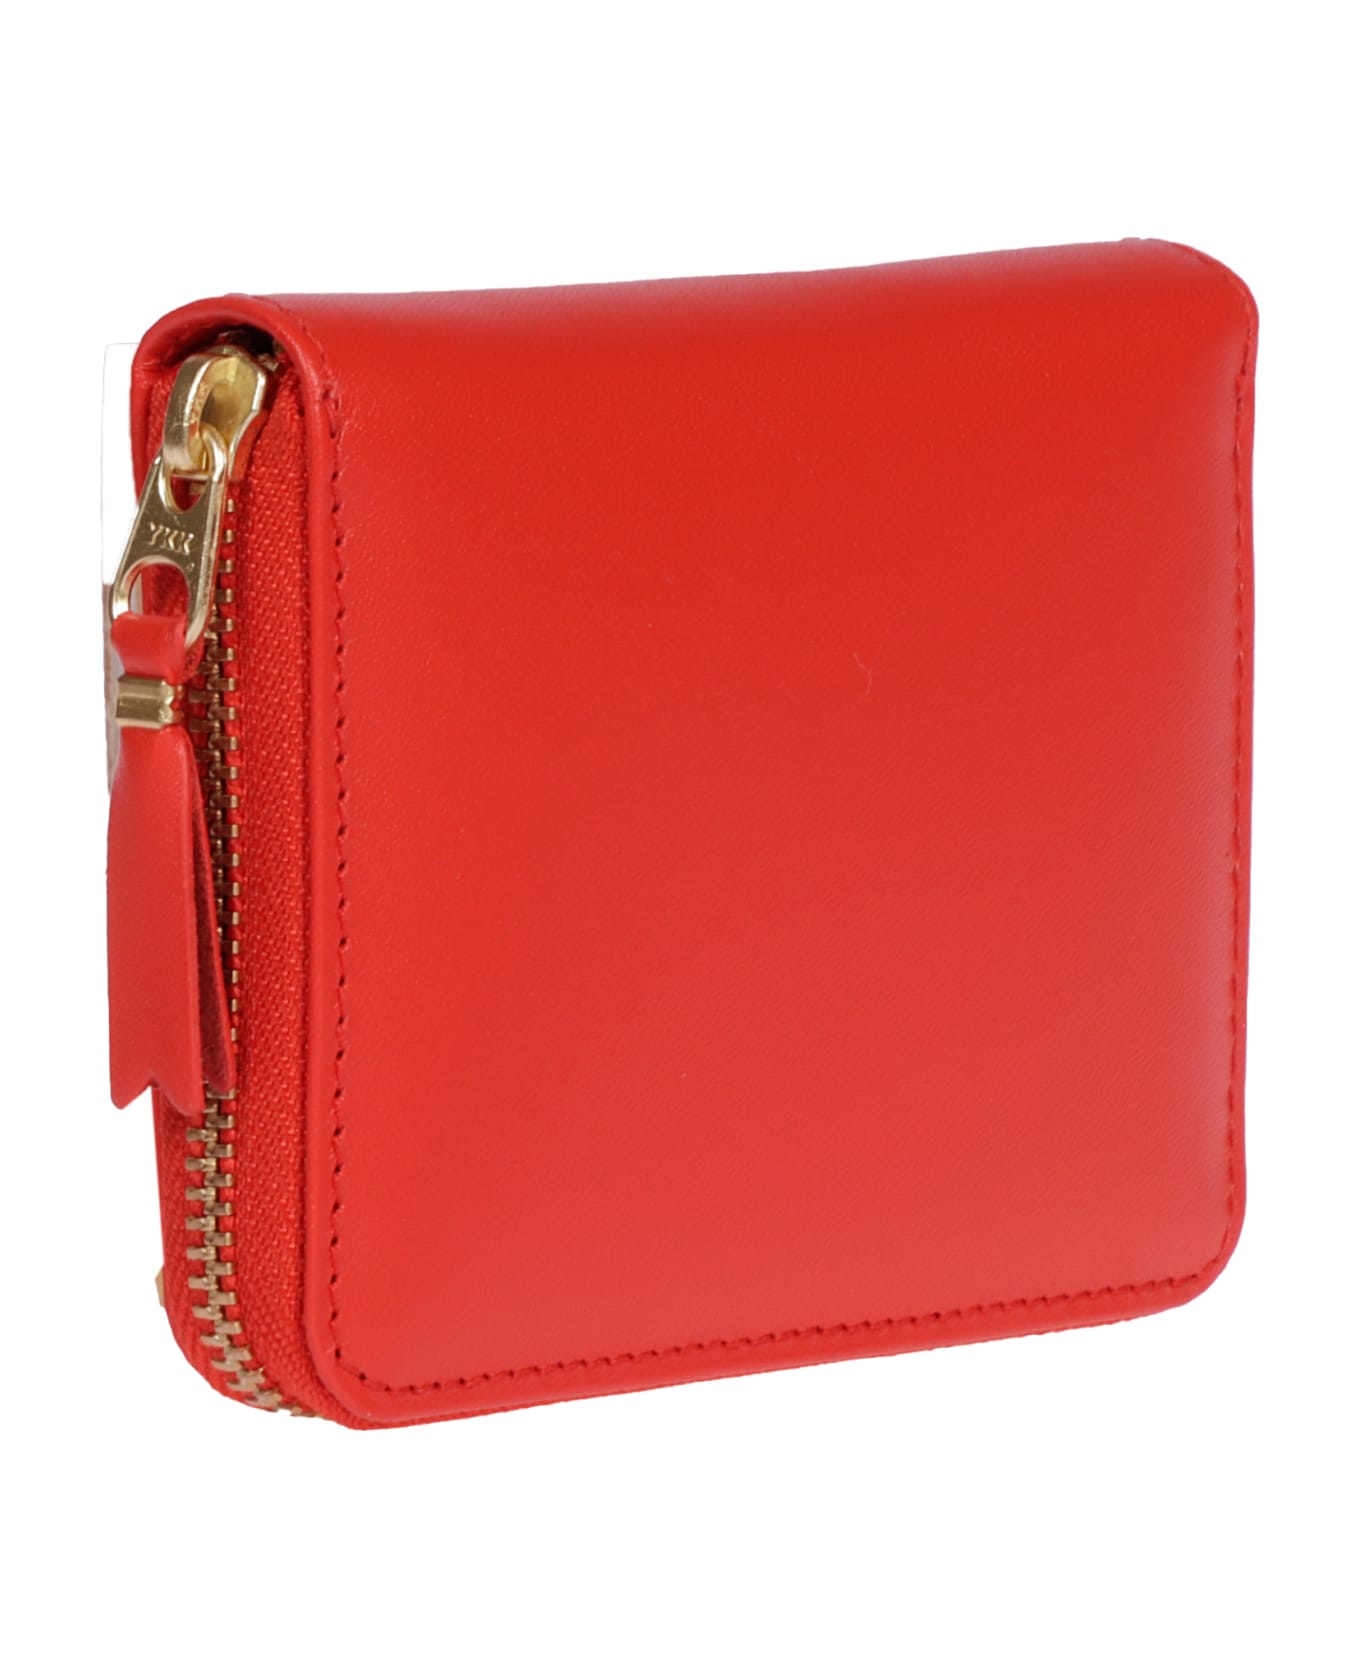 Comme des Garçons Wallet Classic Leather - 5 財布